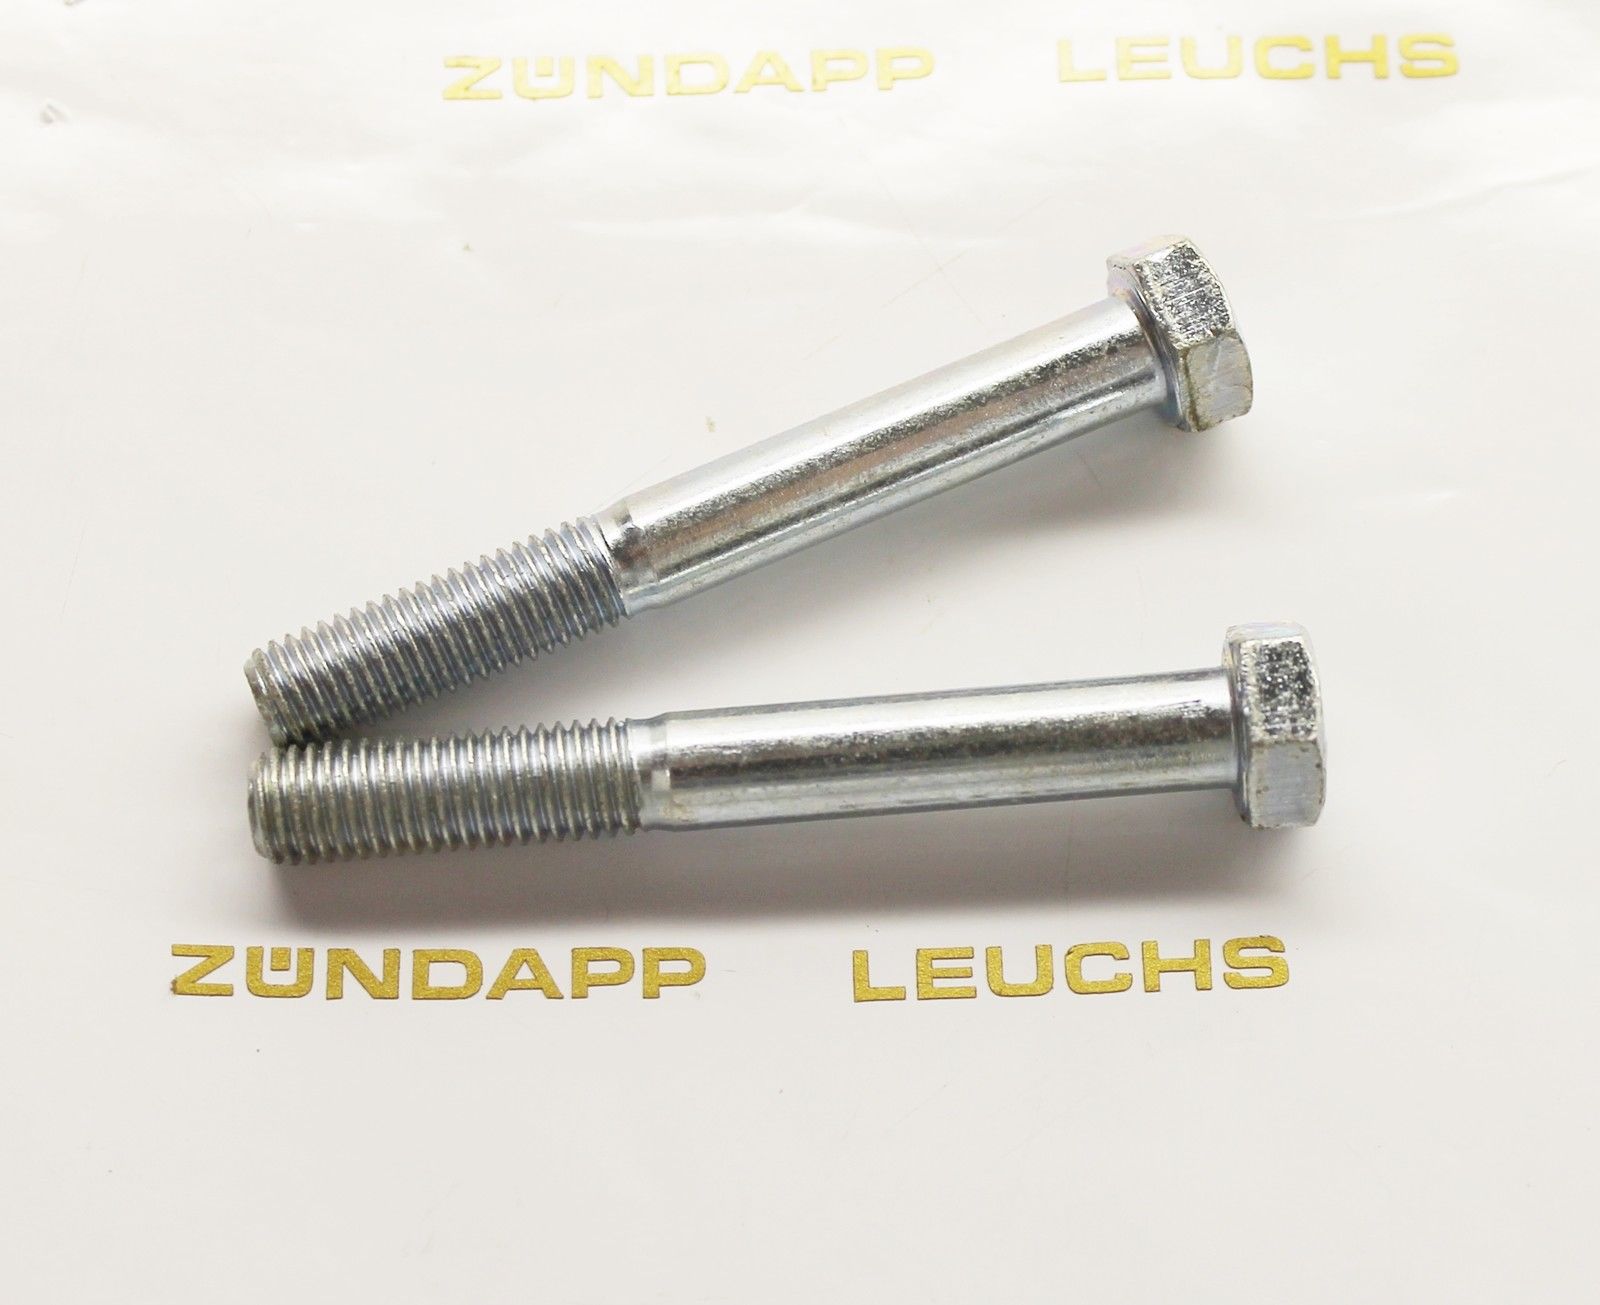 Zündapp® Dienst Leuchs Shop - Zündapp 2 x M7 x 55mm Schraube für Sitzbank /  Heckteil